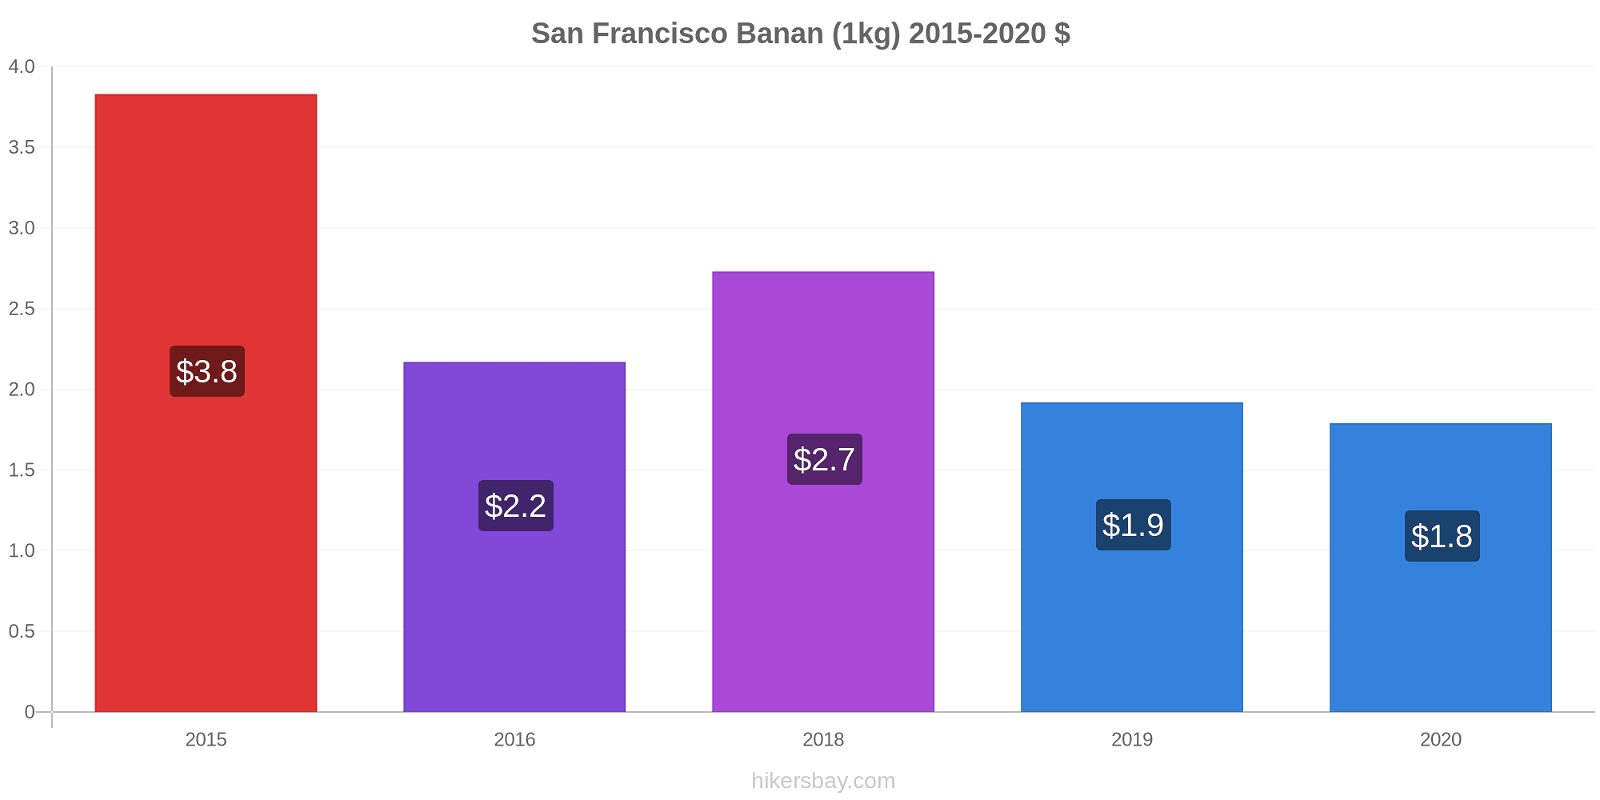 San Francisco prisförändringar Banan (1kg) hikersbay.com